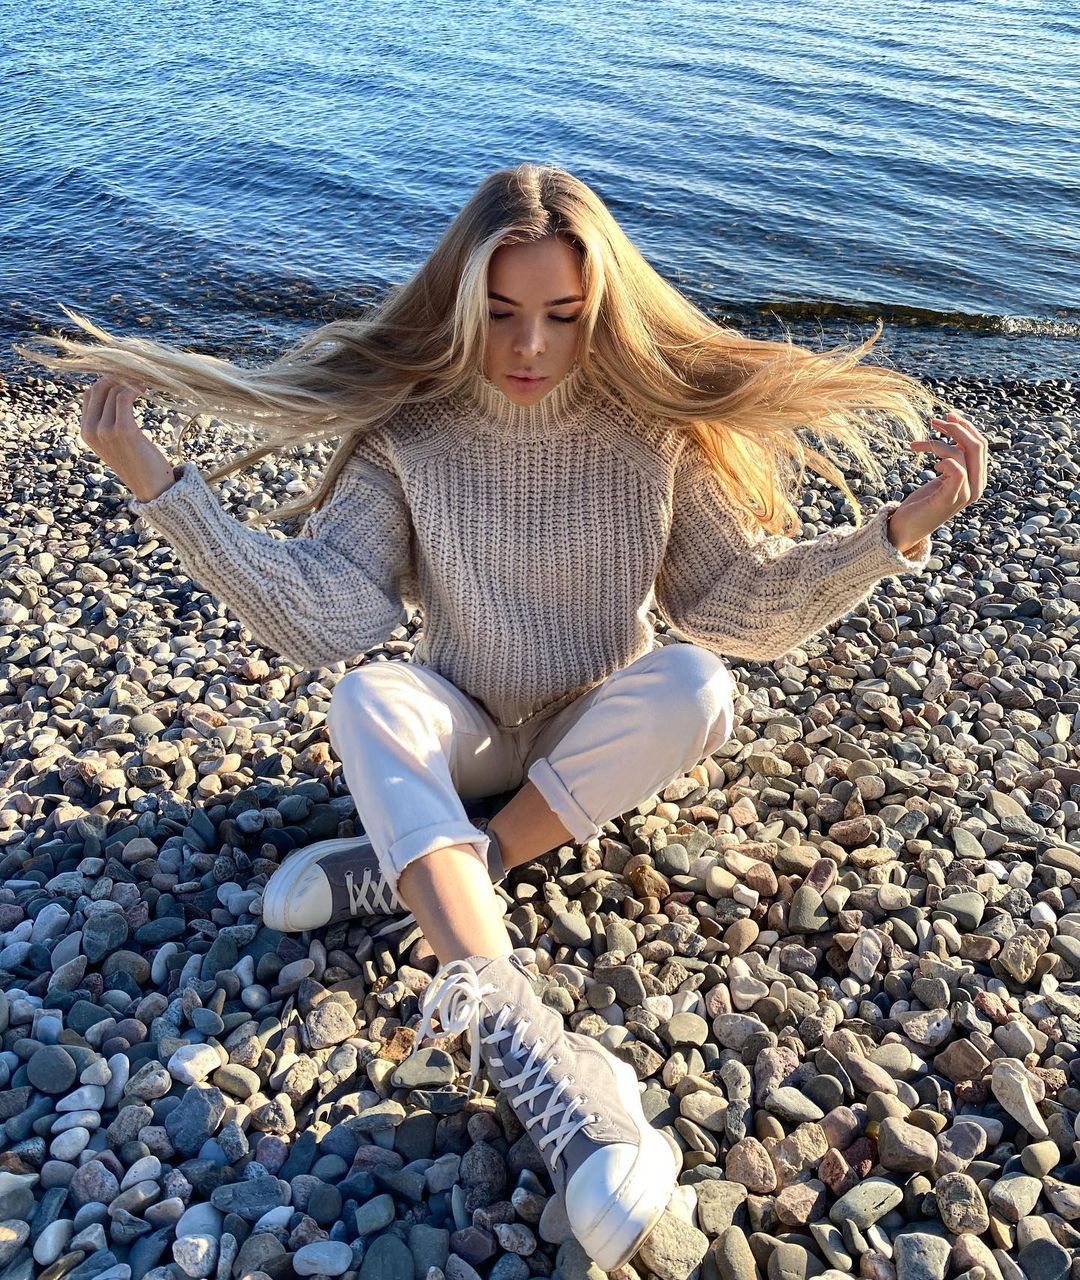 Natalysyakova 12 hottest pics, natalysyakova 12 instagram